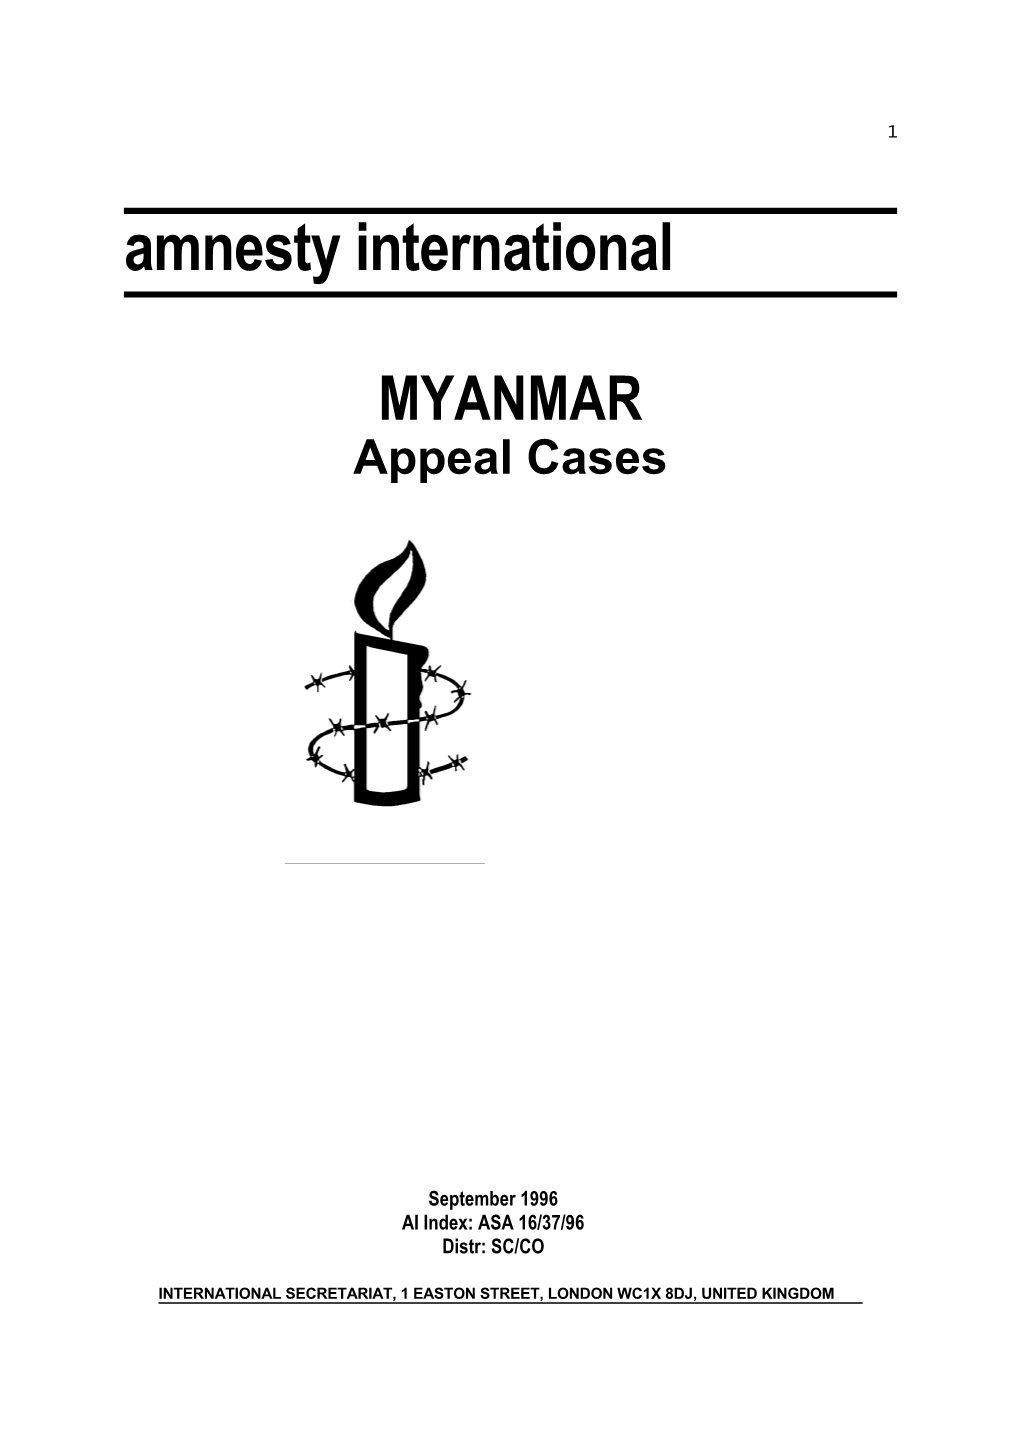 MYANMAR Appeal Cases